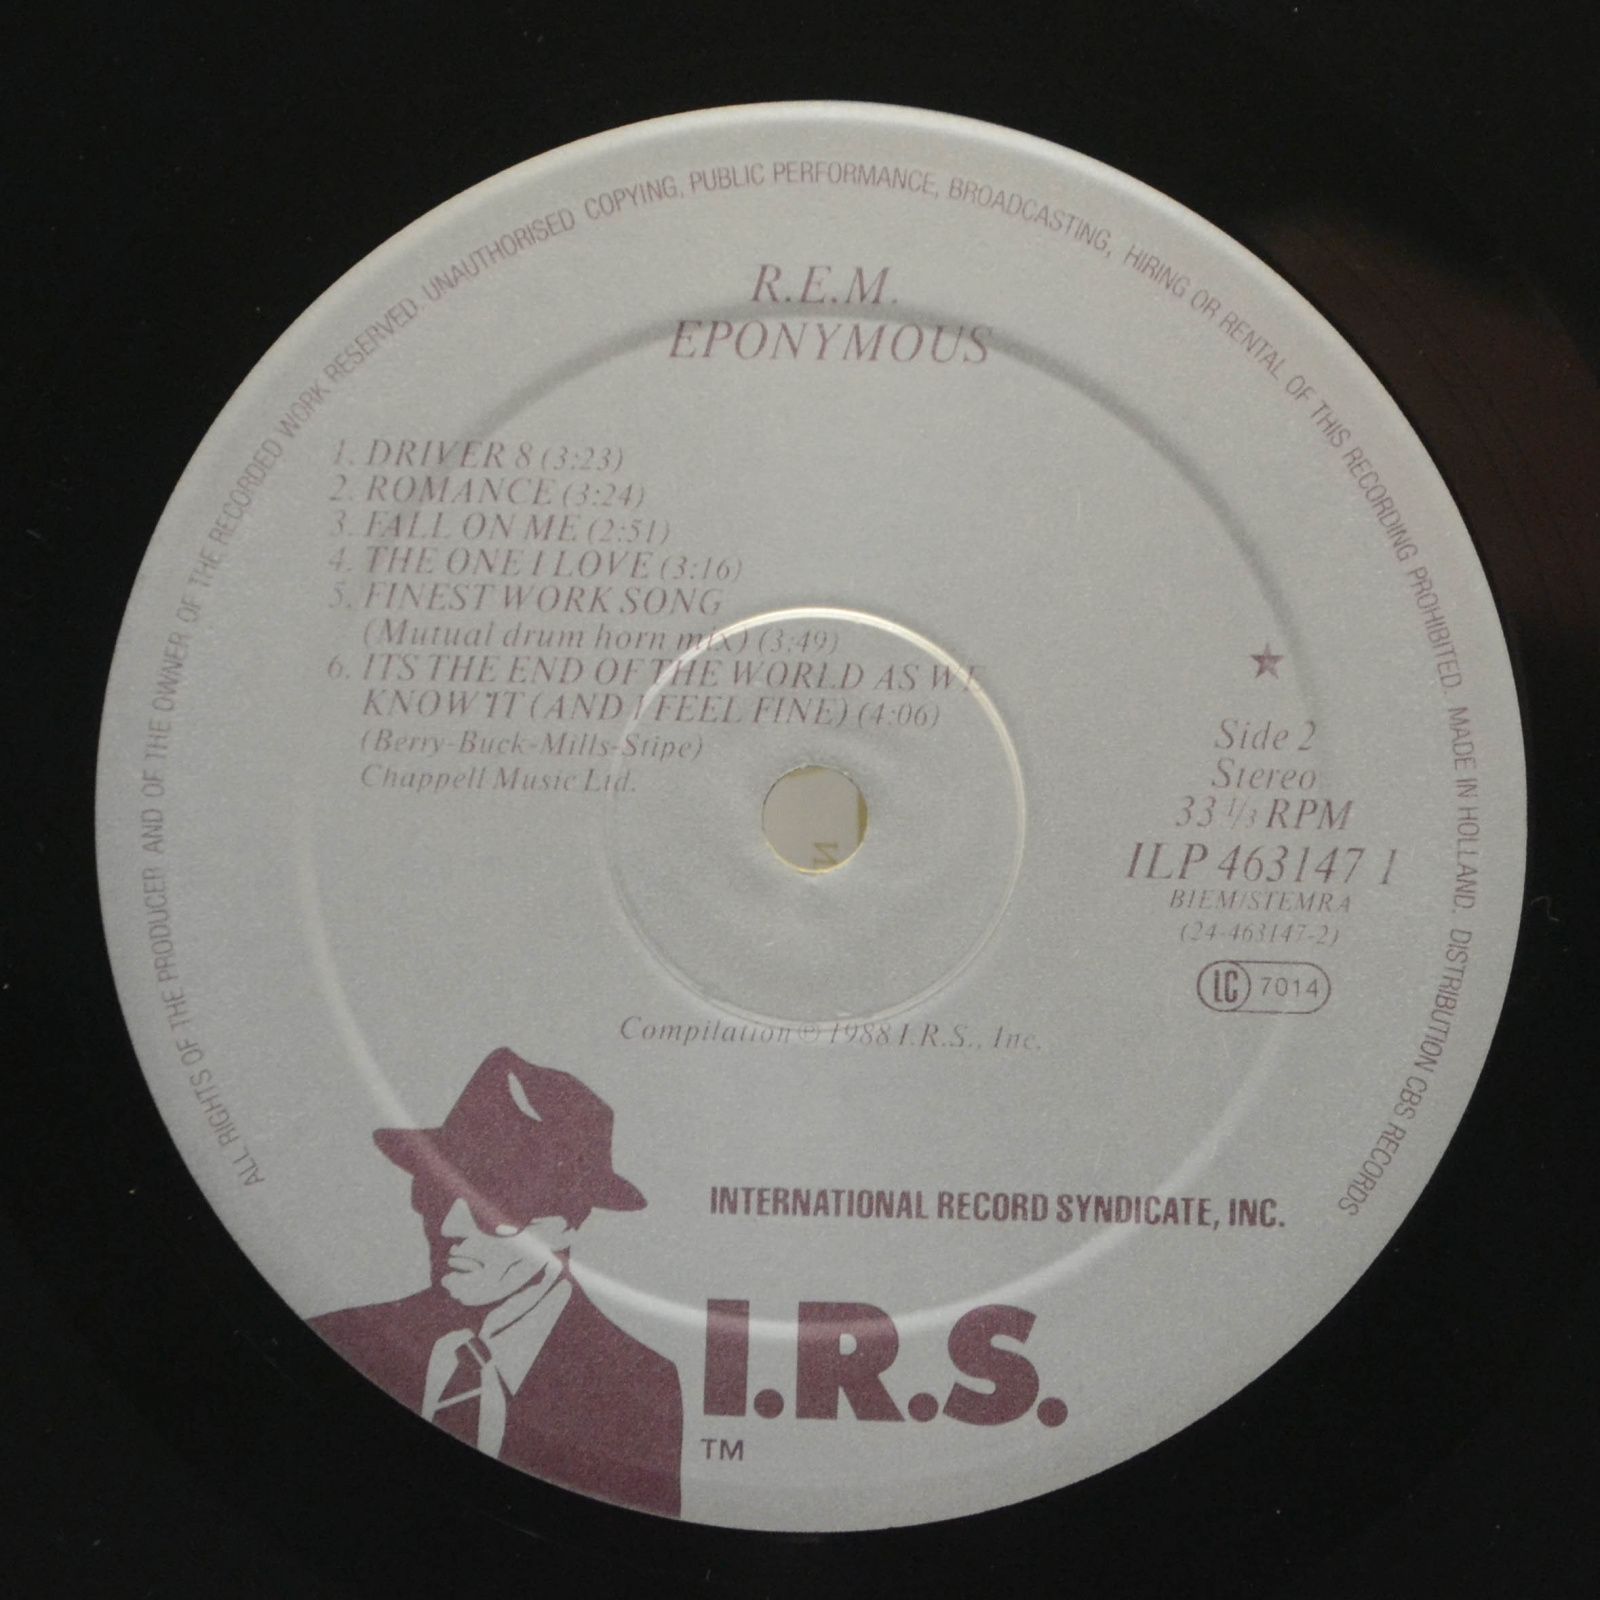 R.E.M. — Eponymous, 1988